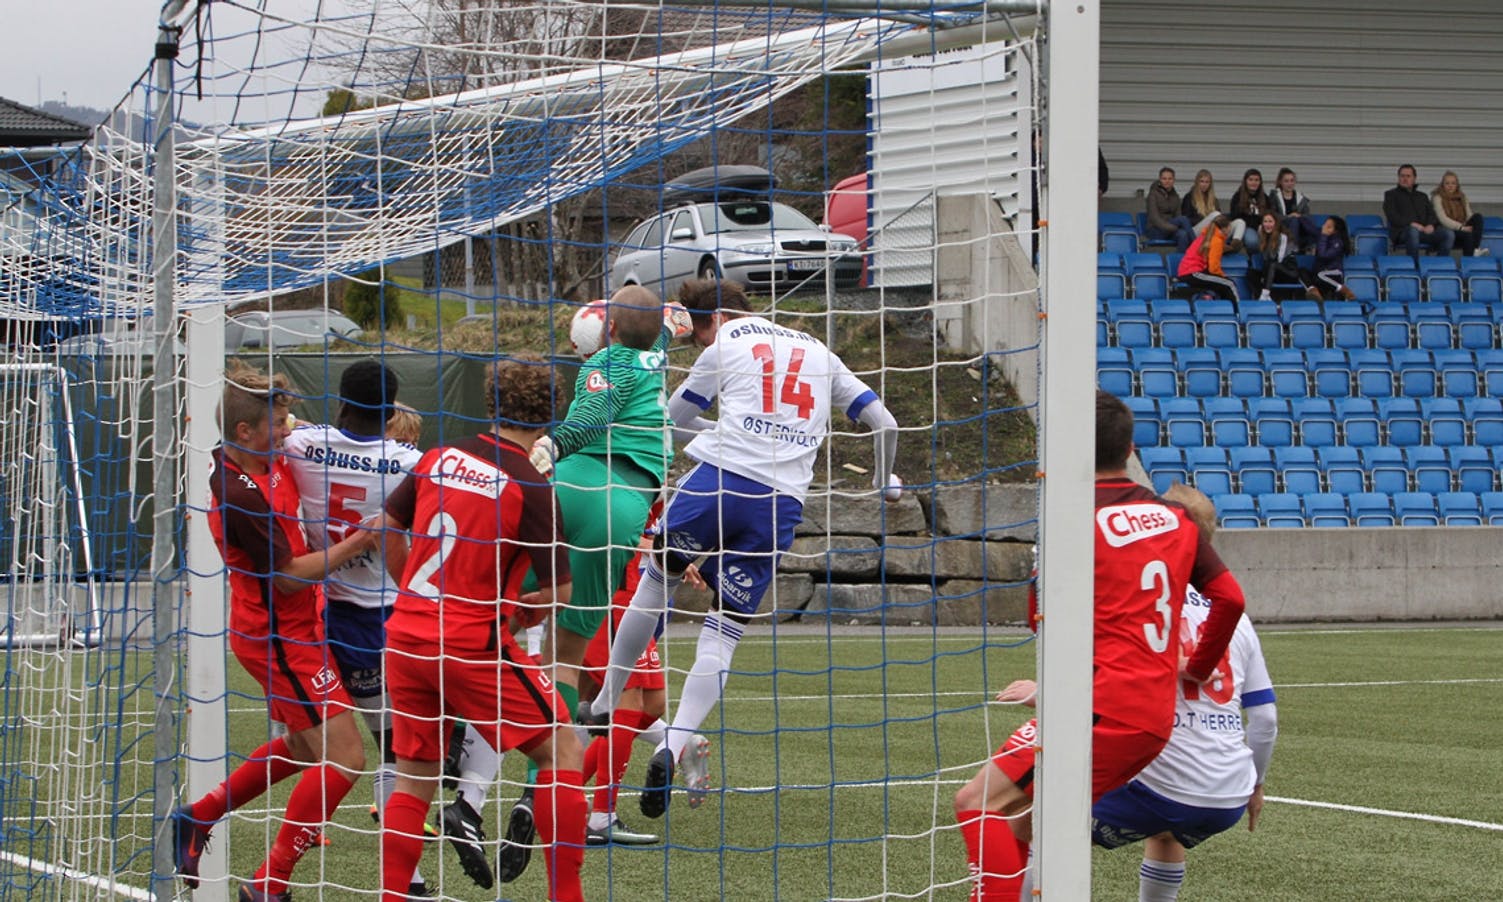 Kristoffer Østervold heada inn 2-0 på ein corner (foto: Andris Hamre)